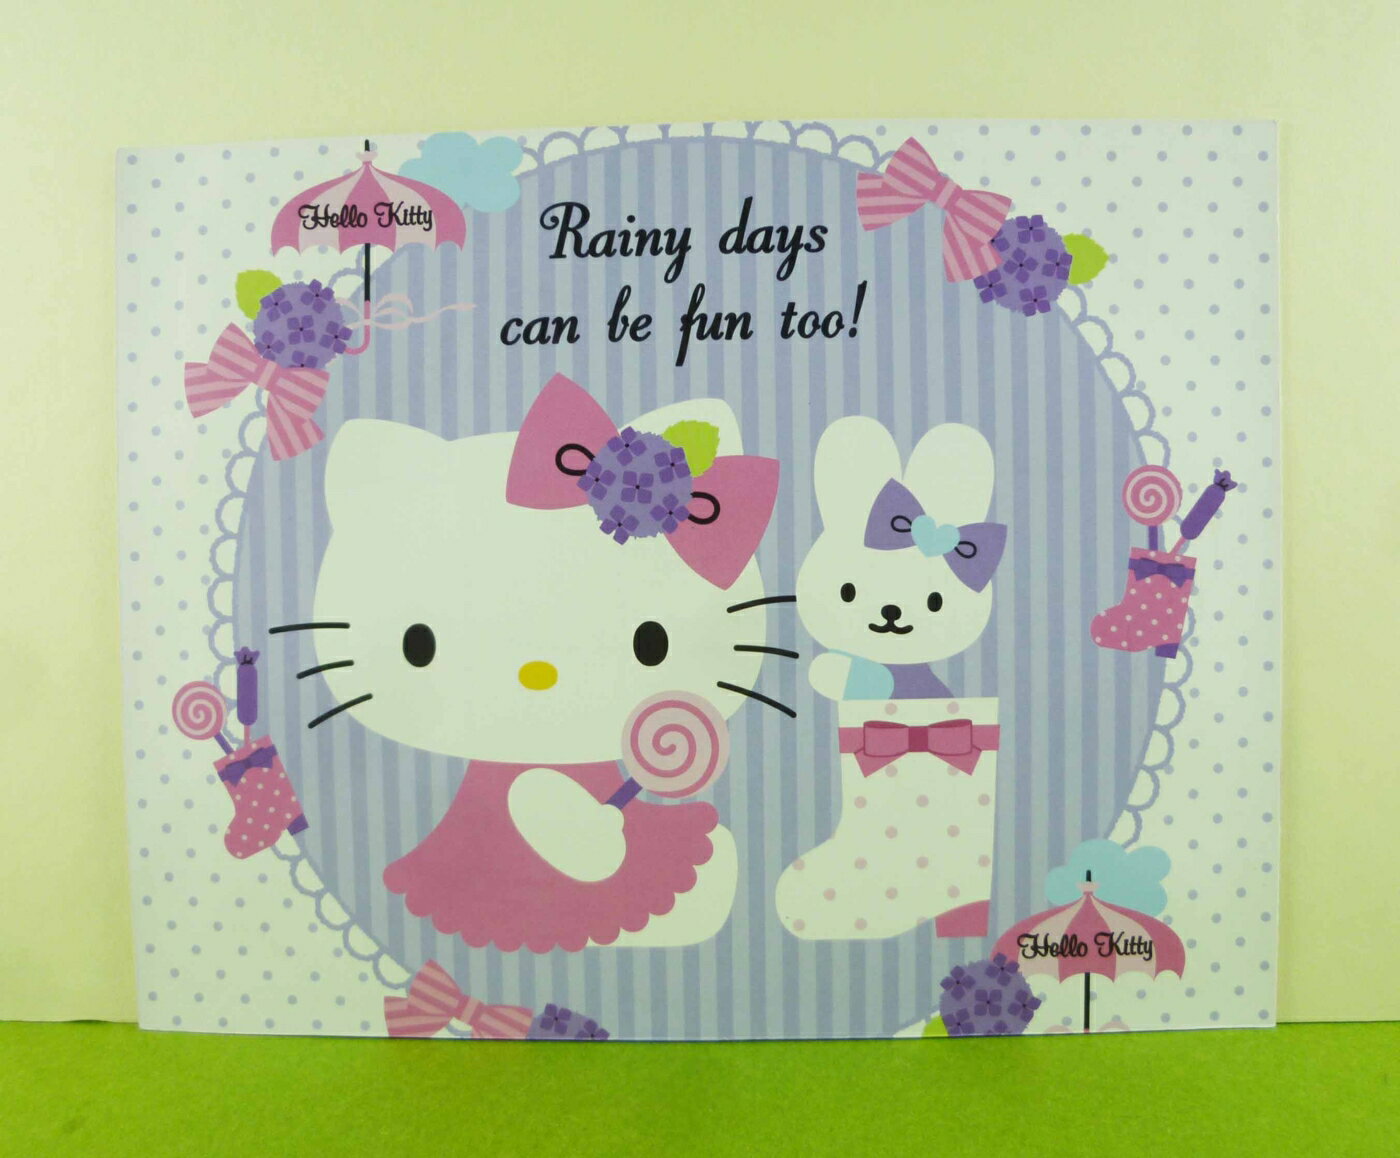 【震撼精品百貨】Hello Kitty 凱蒂貓 卡片-糖果紫 震撼日式精品百貨